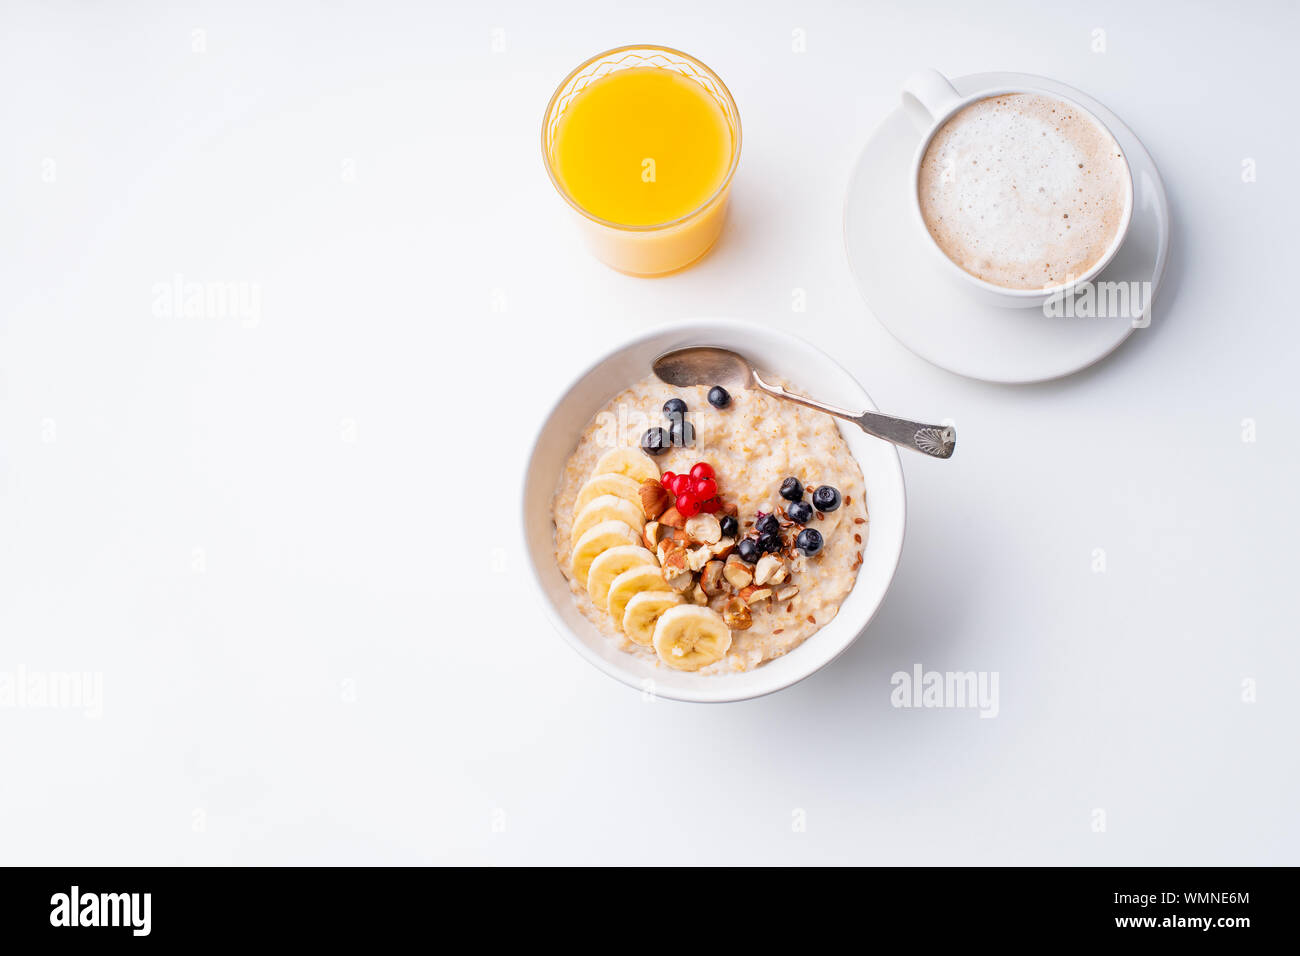 Le petit-déjeuner avec du gruau avec de petits fruits et noix, café et jus d'orange Banque D'Images